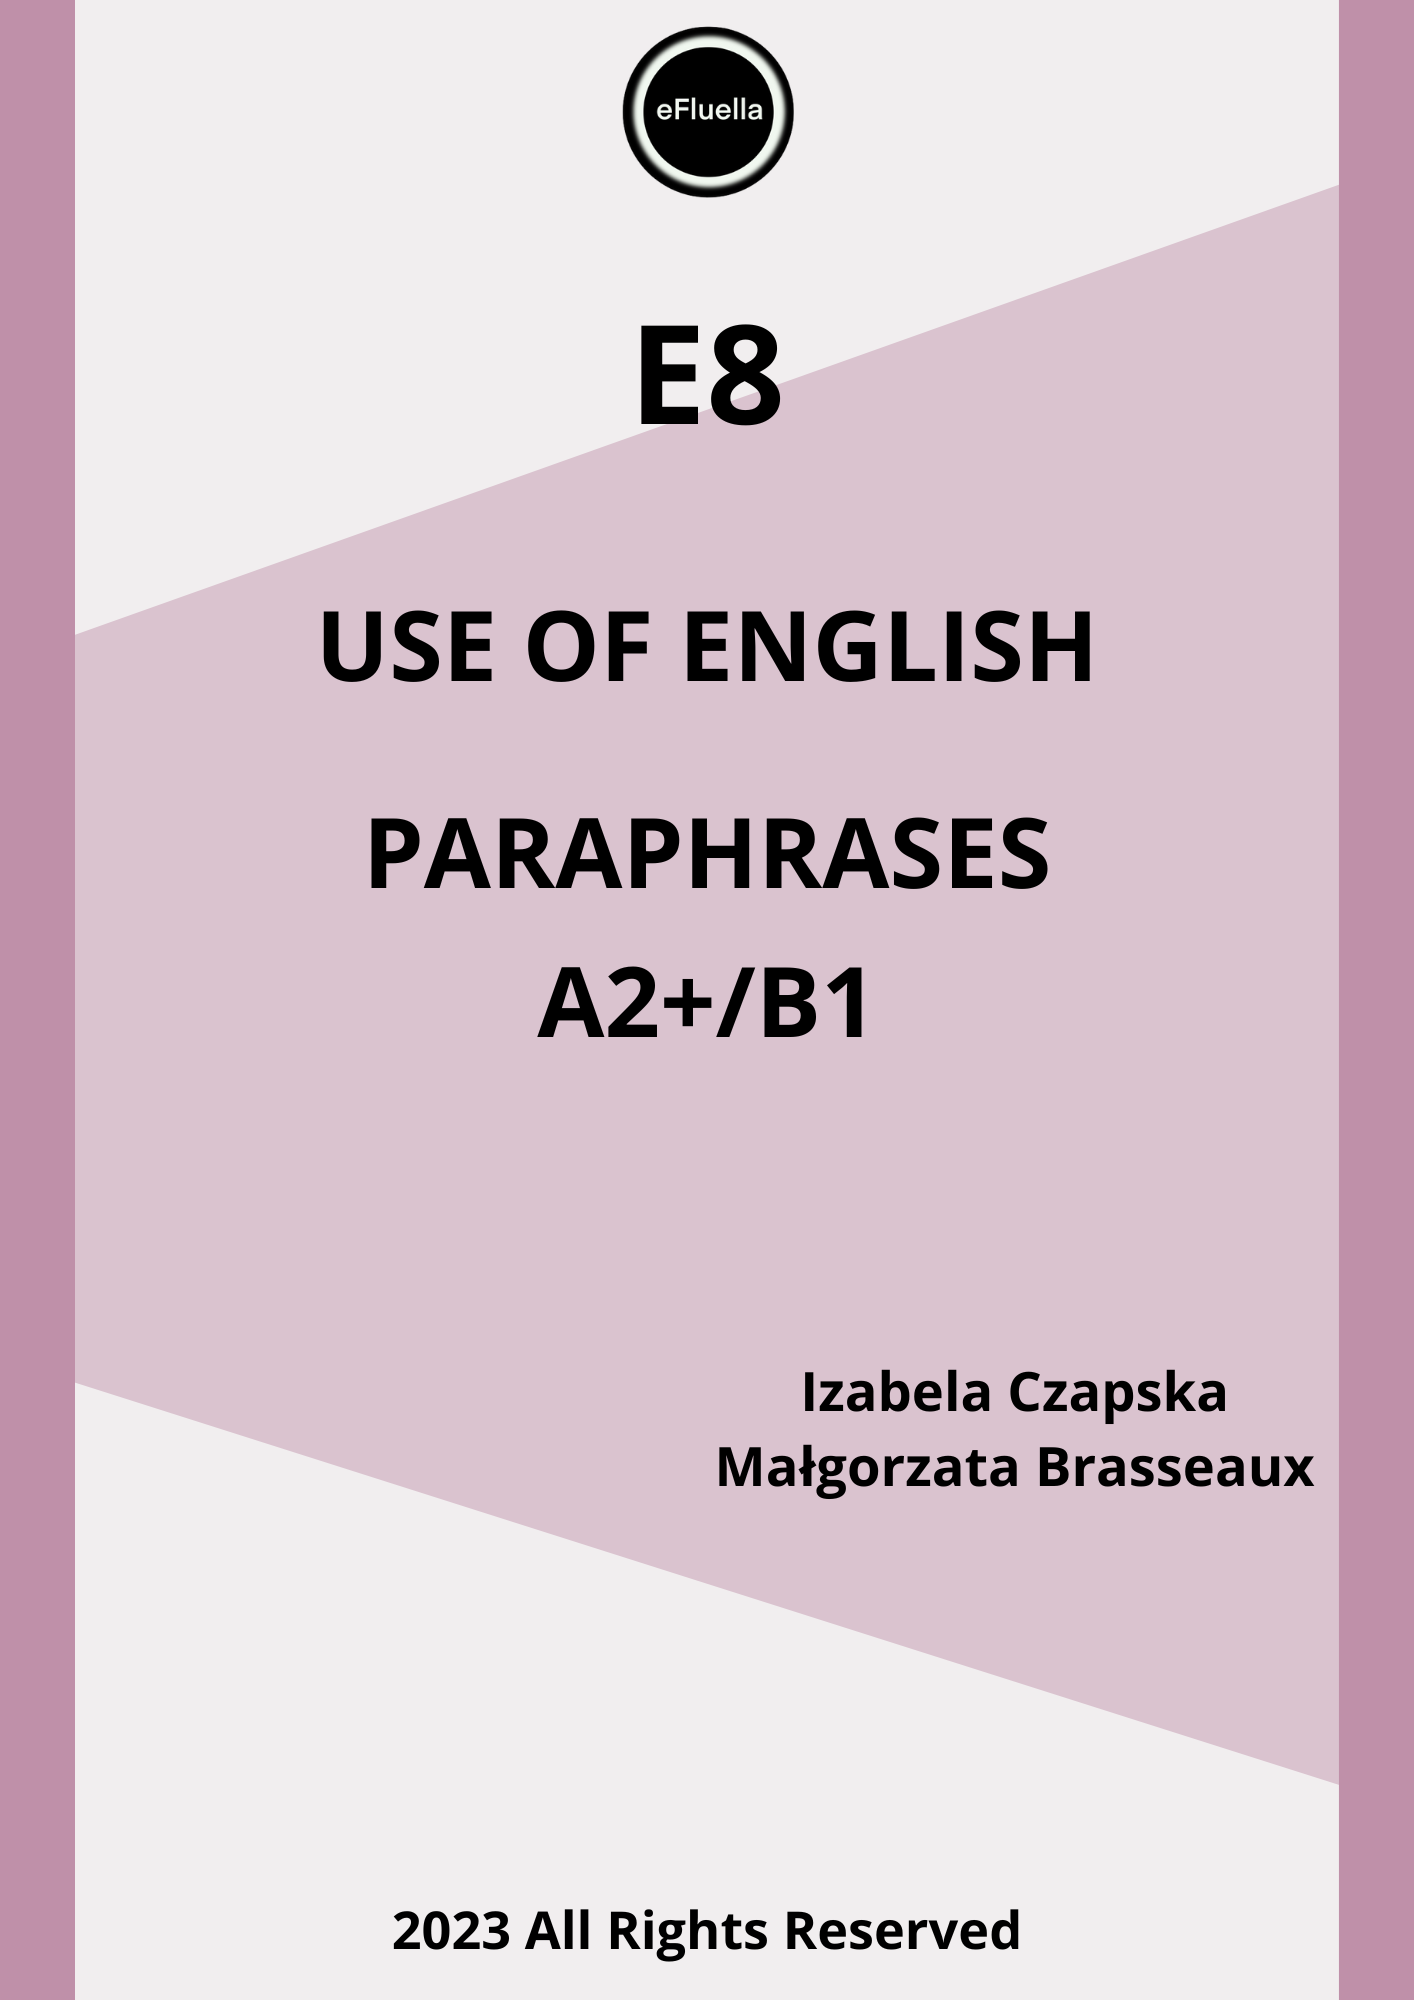 E8 PARAPHRASES EXERCISES